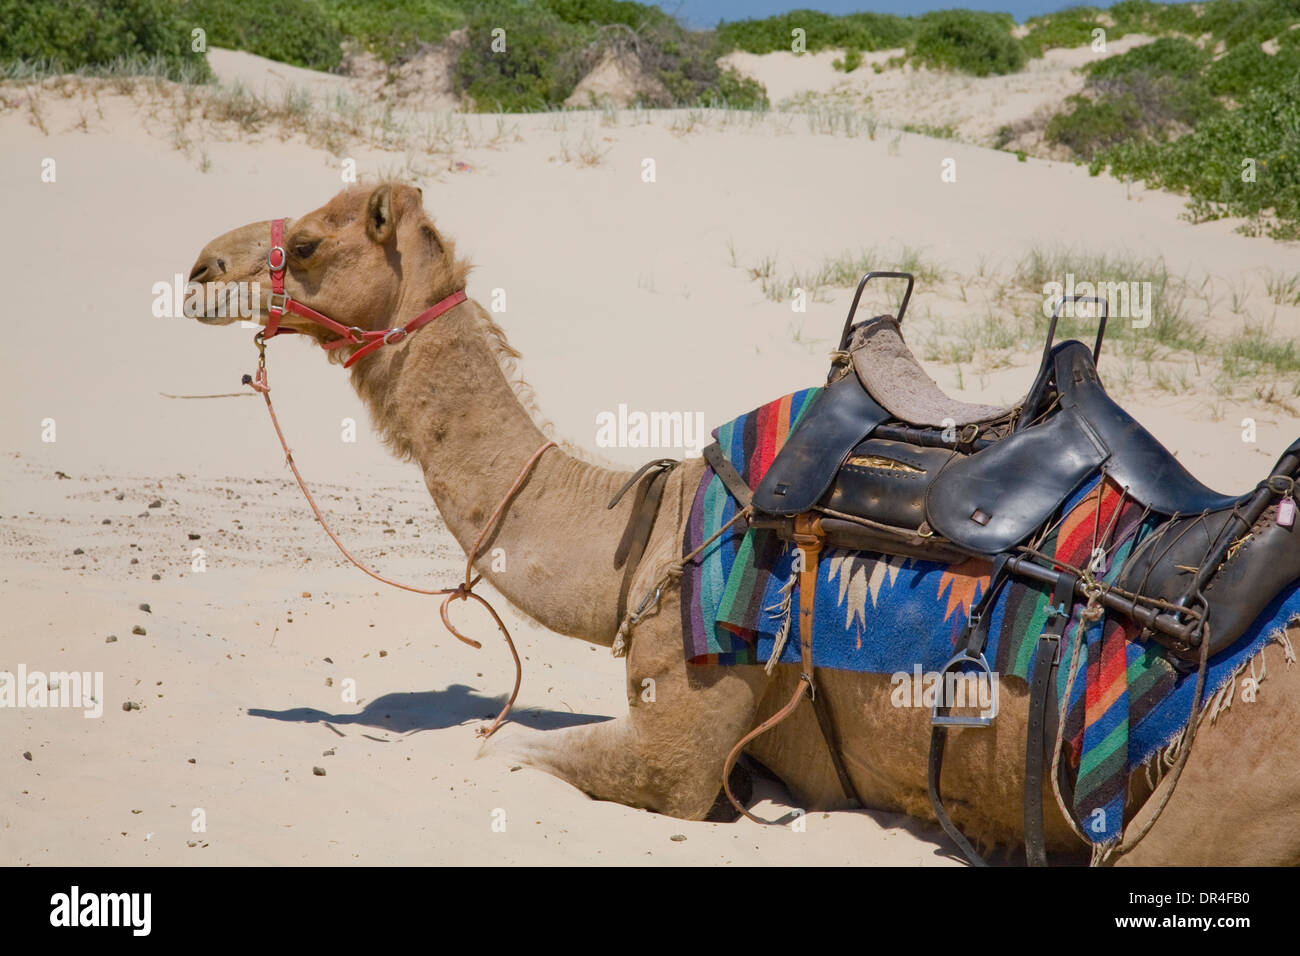 Camel sur stockton Beach, près de nelson Bay, nouvelle-galles du sud, australie Banque D'Images